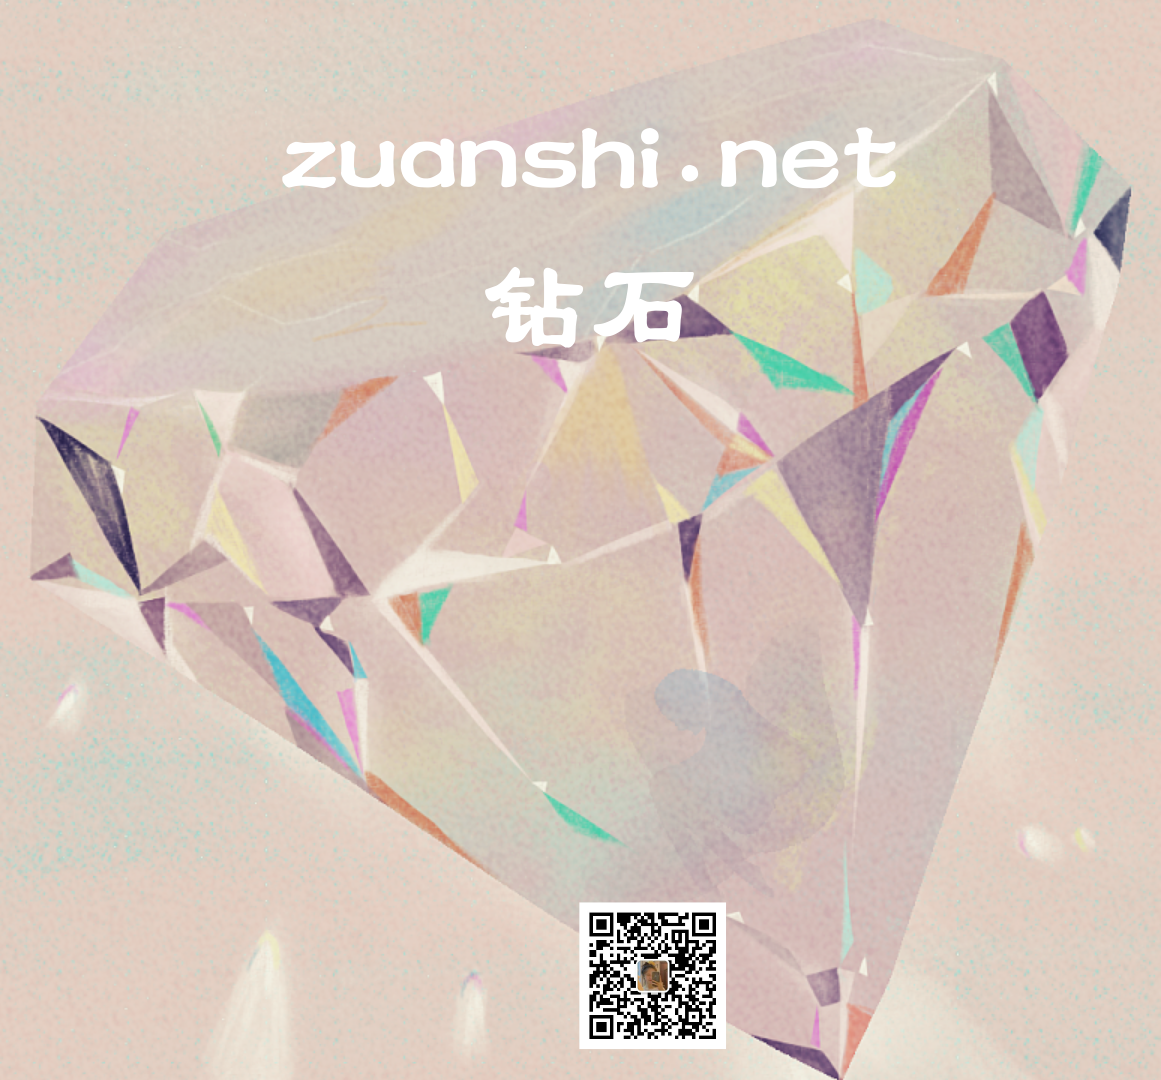 zuanshi.net